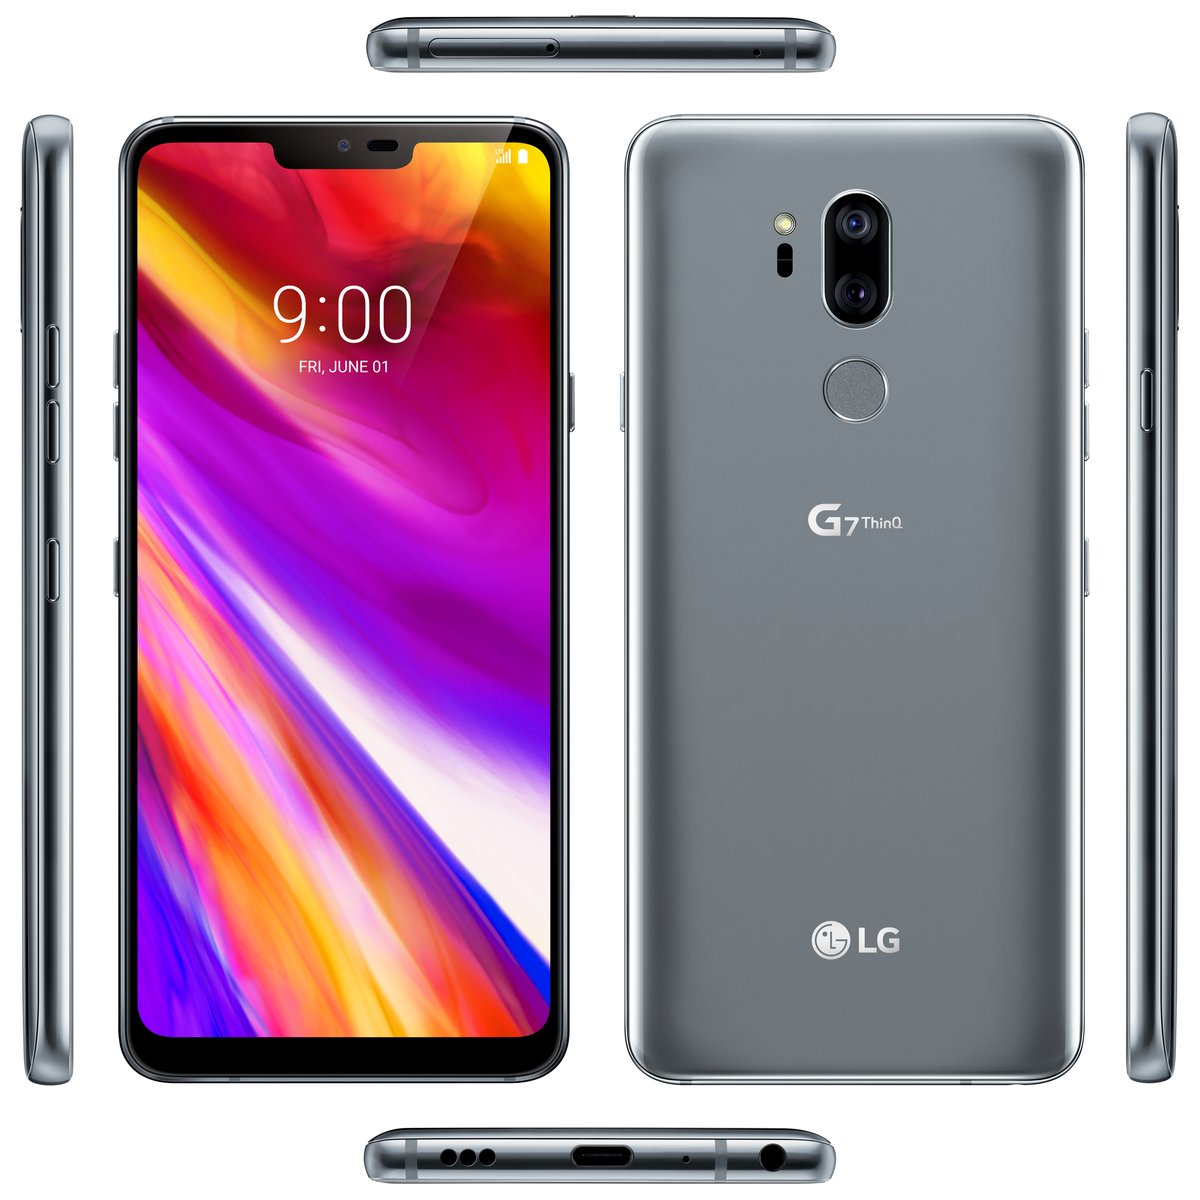 LG G7 ThinQ Press Renderss